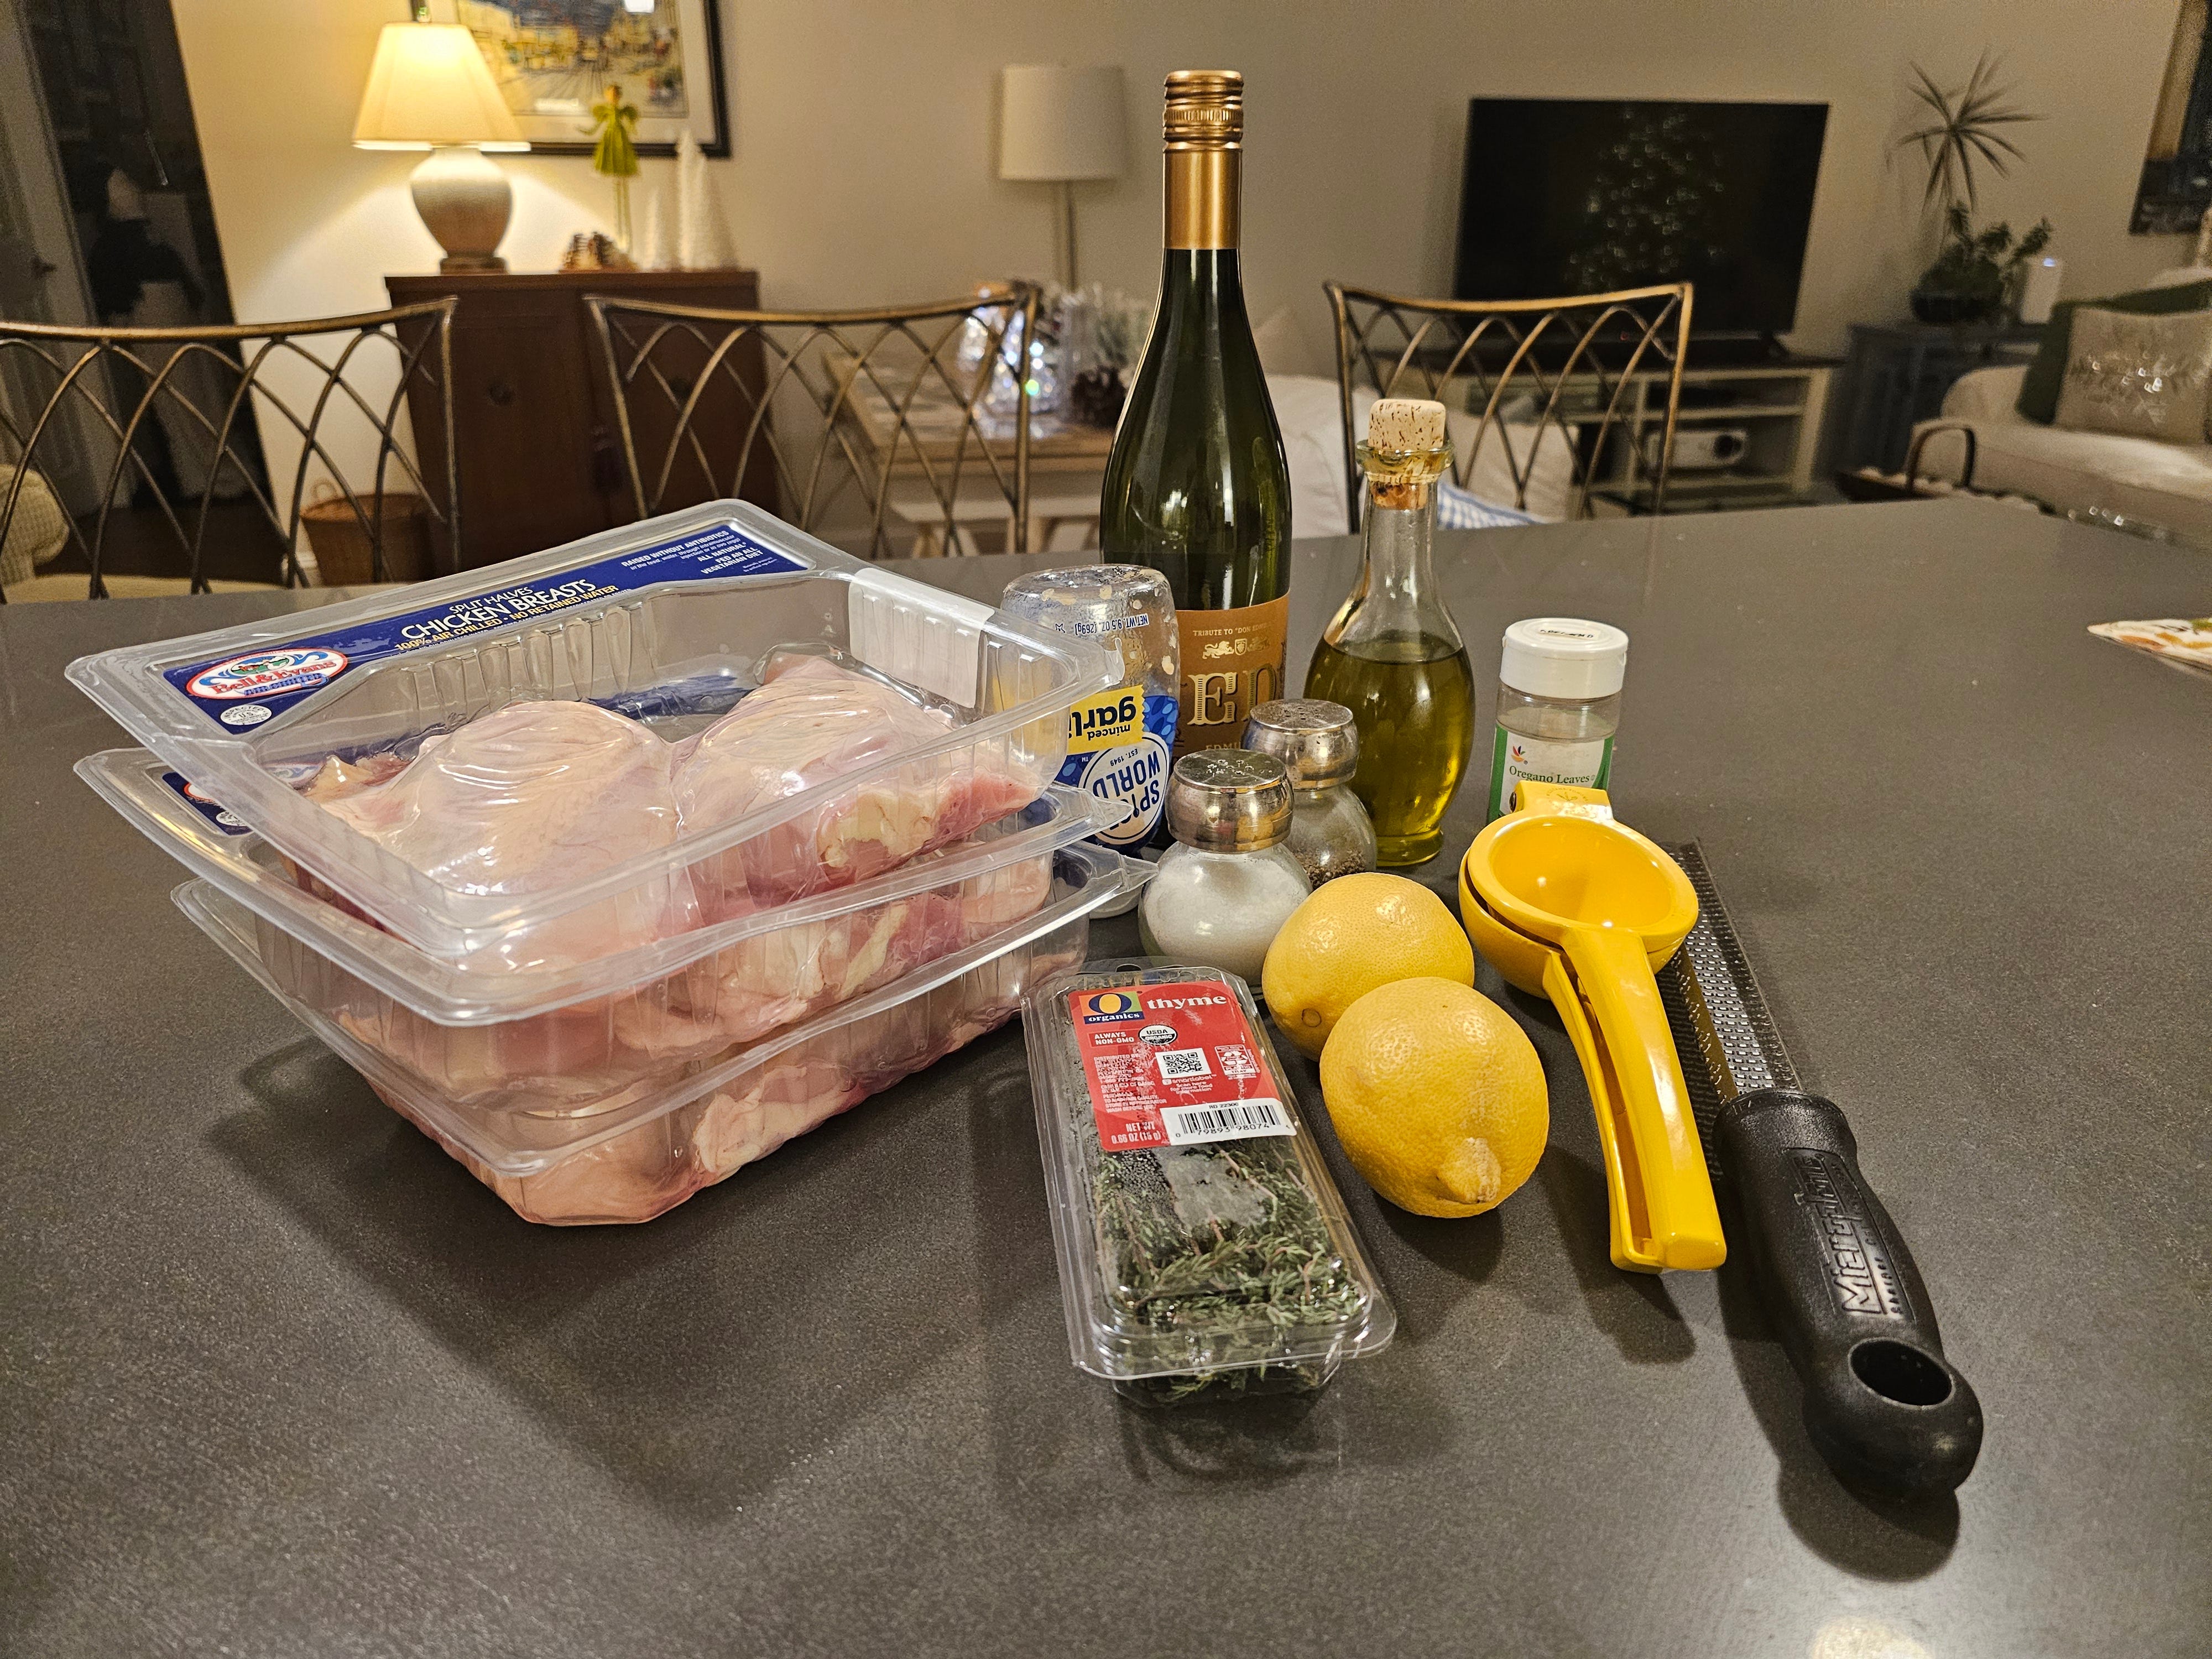 Pakete mit Hähnchenbrust, Thymian, zwei Zitronen, Saftpresse, Olivenöl auf der Theke